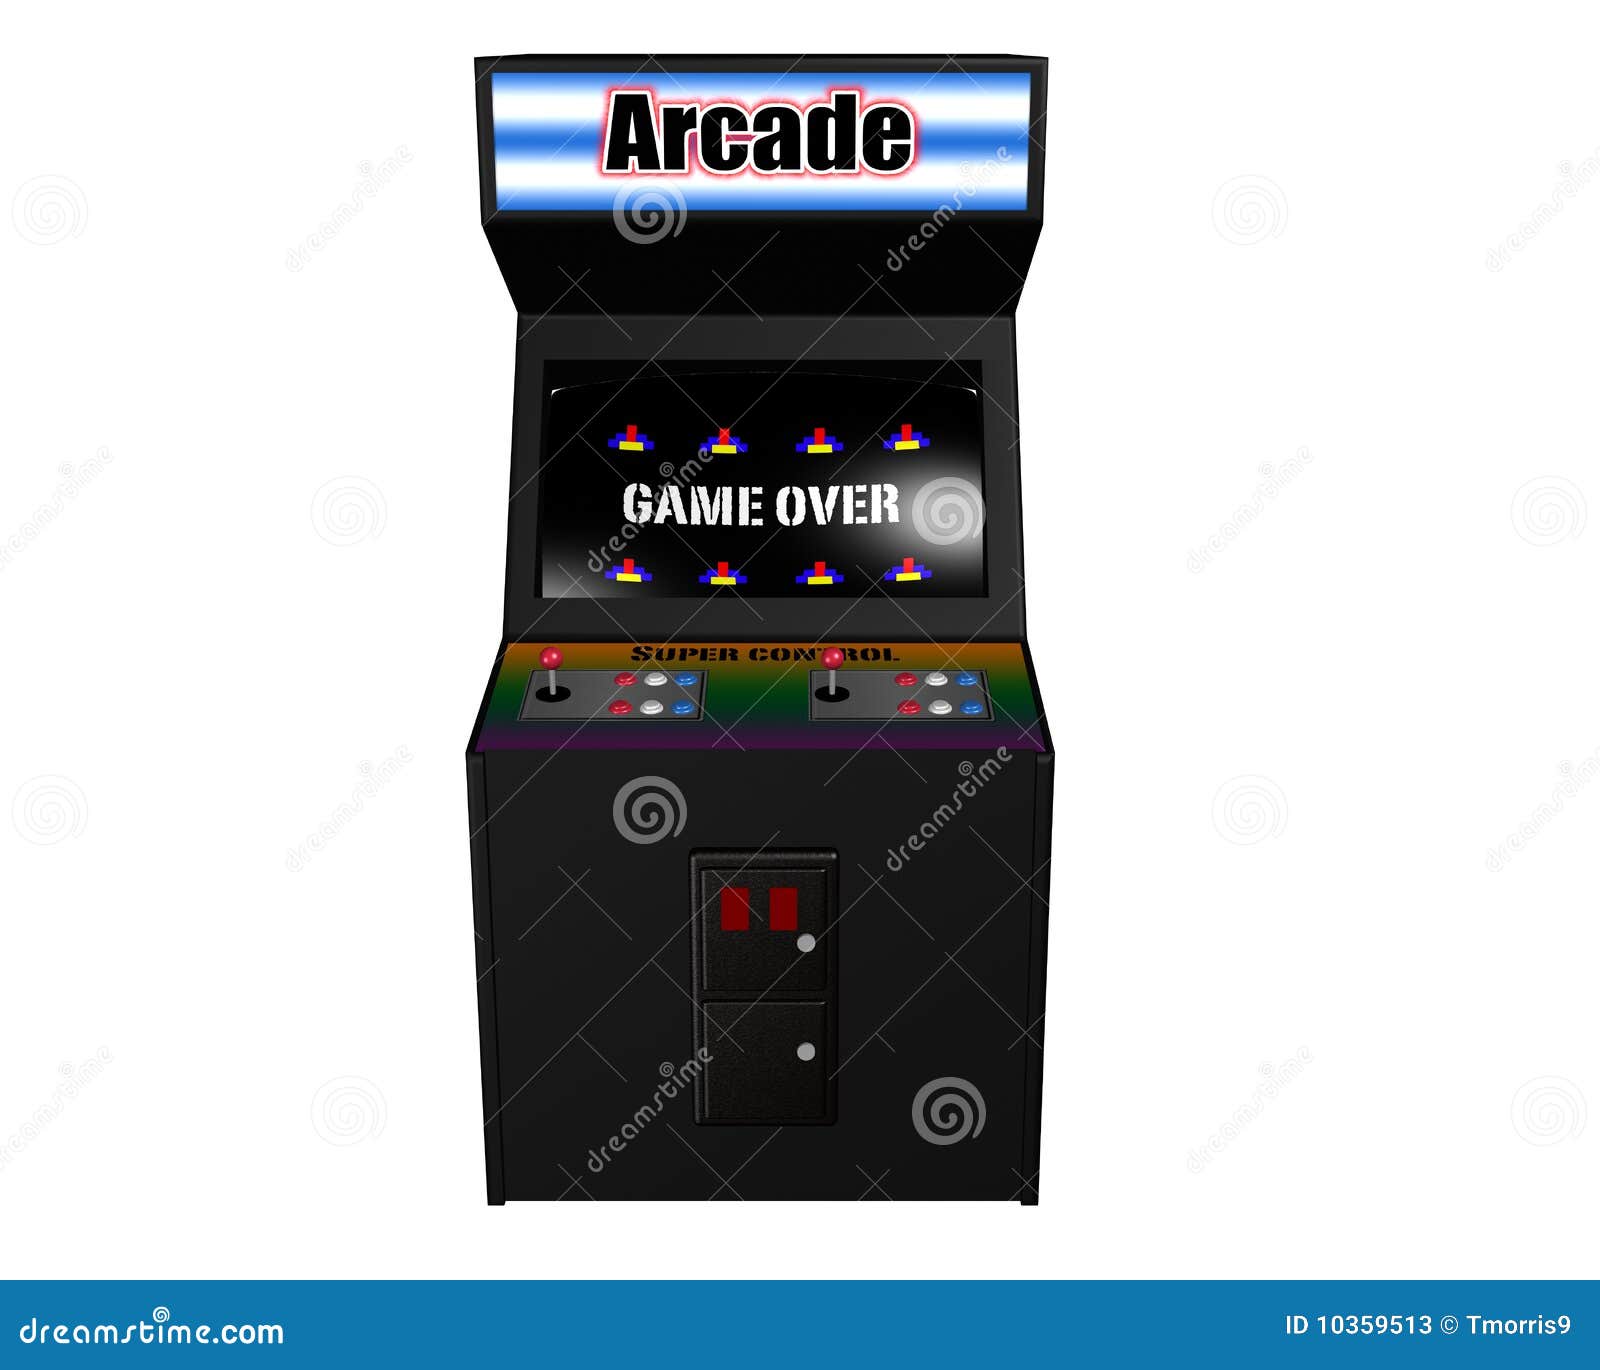 arcade game on white